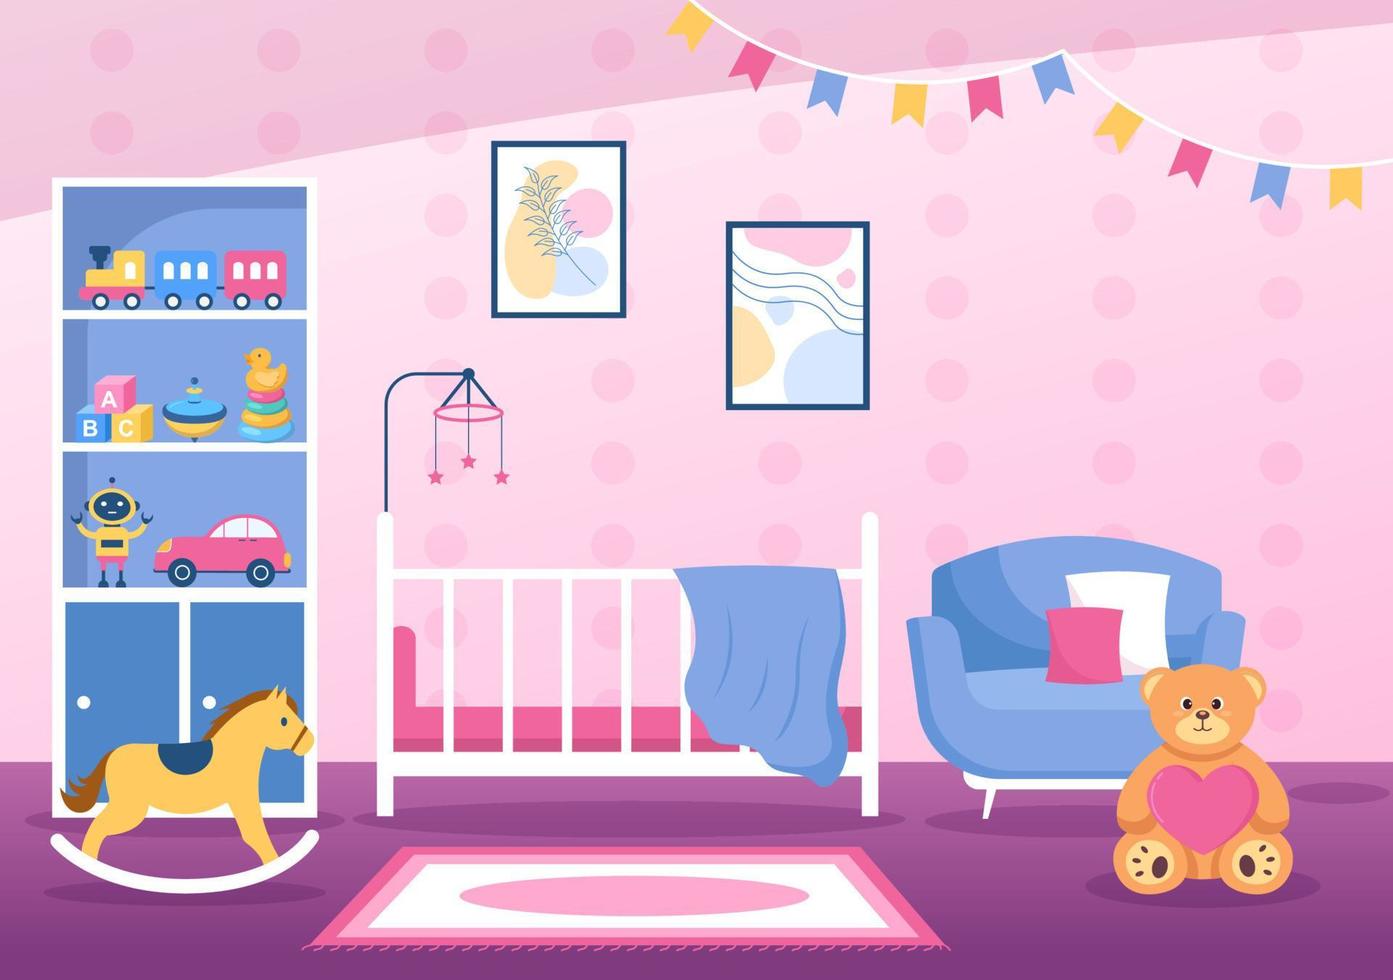 gezellige kinderkamer interieur met meubels zoals bed, speelgoed, kledingkast, nachtkastje, vaas, kroonluchter in moderne stijl in cartoon vectorillustratie vector